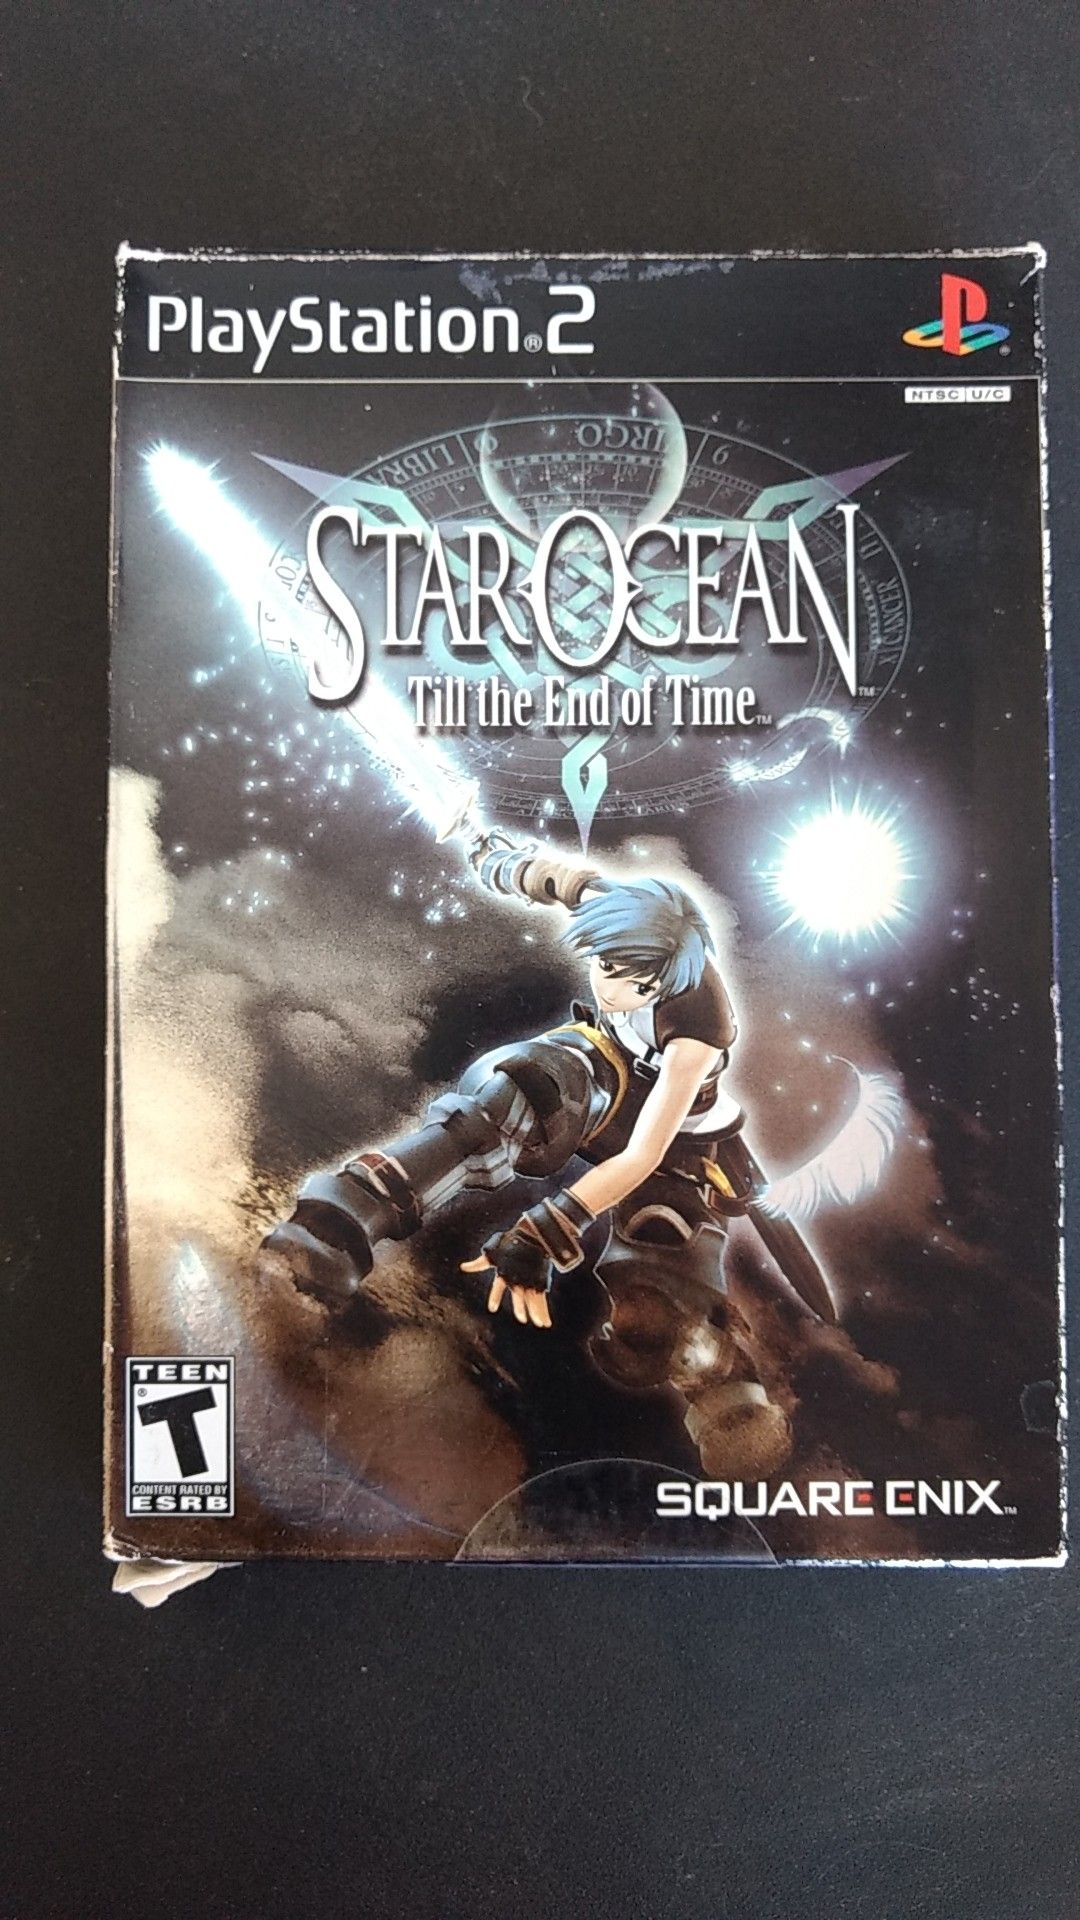 Star ocean ps2 game